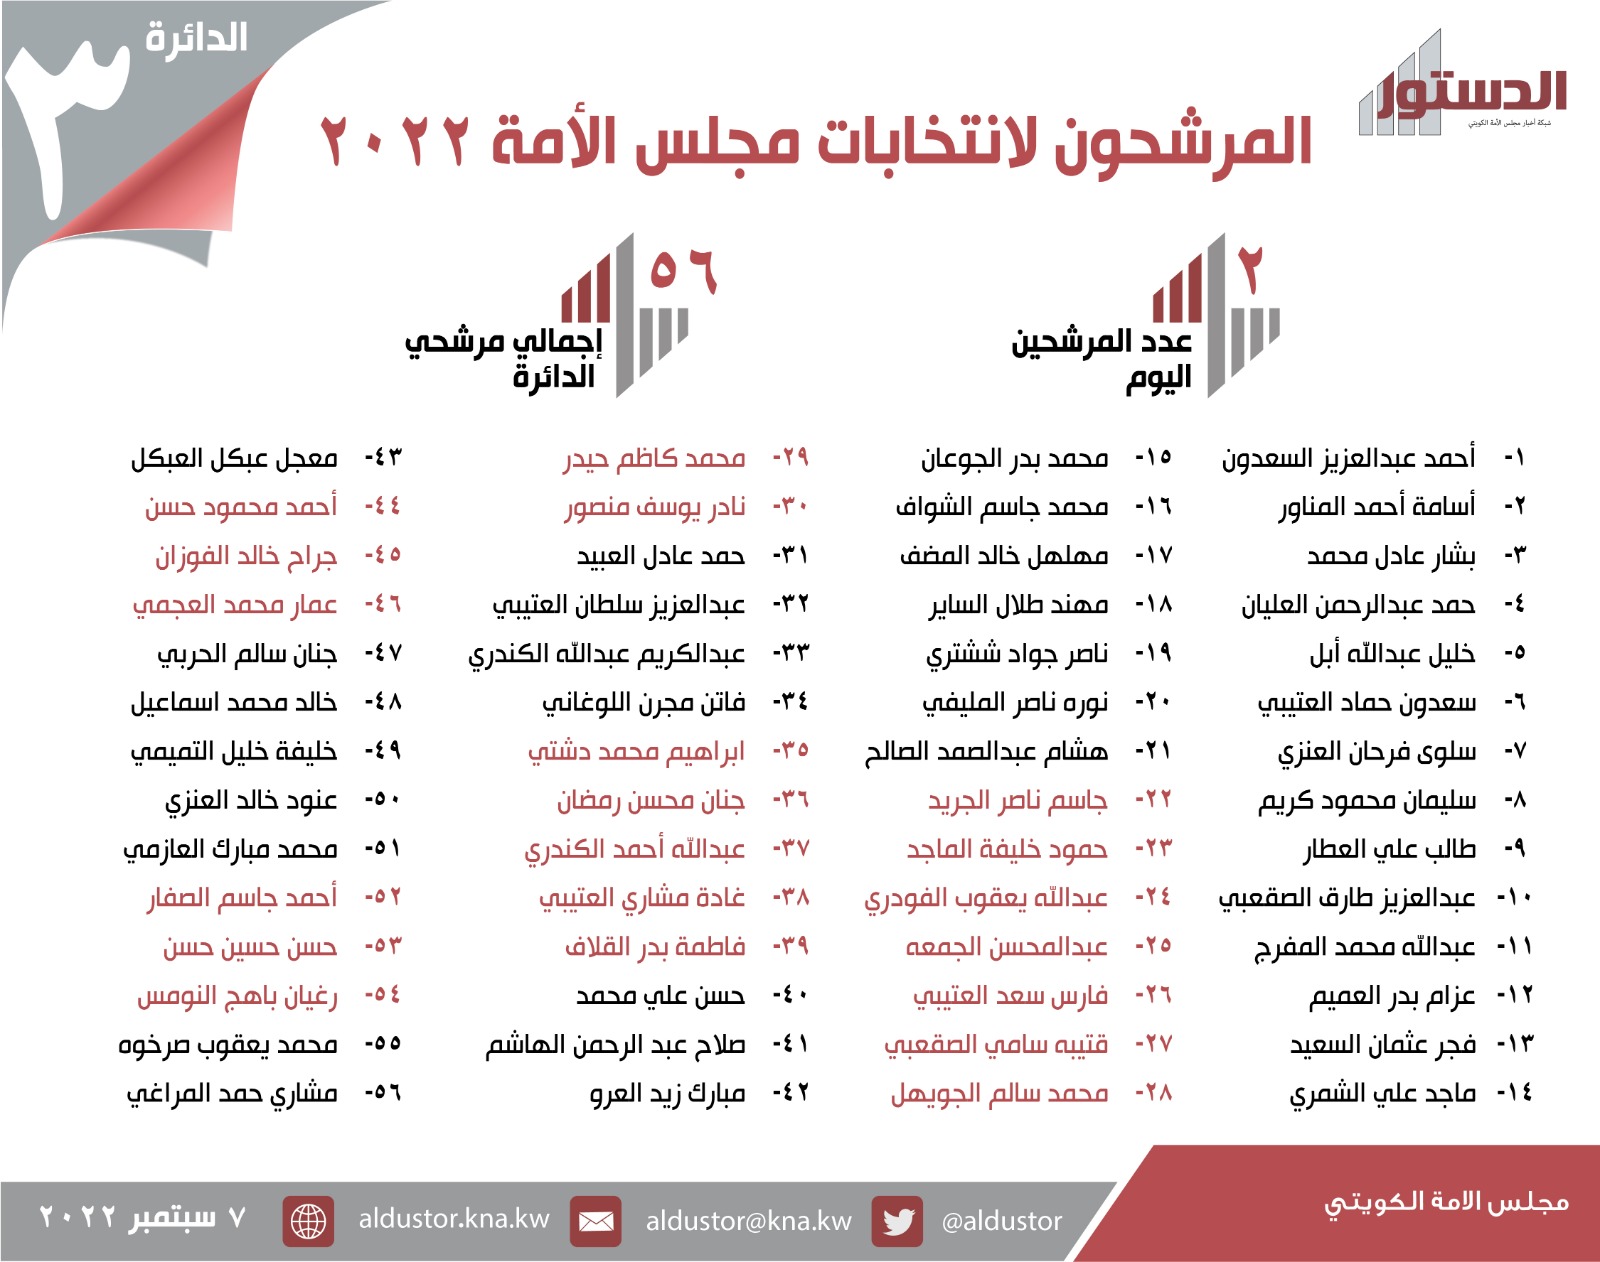 صورة أسماء مرشحين الدائرة الثانية لمجلس الأمة ٢٠٢٢ الكويت